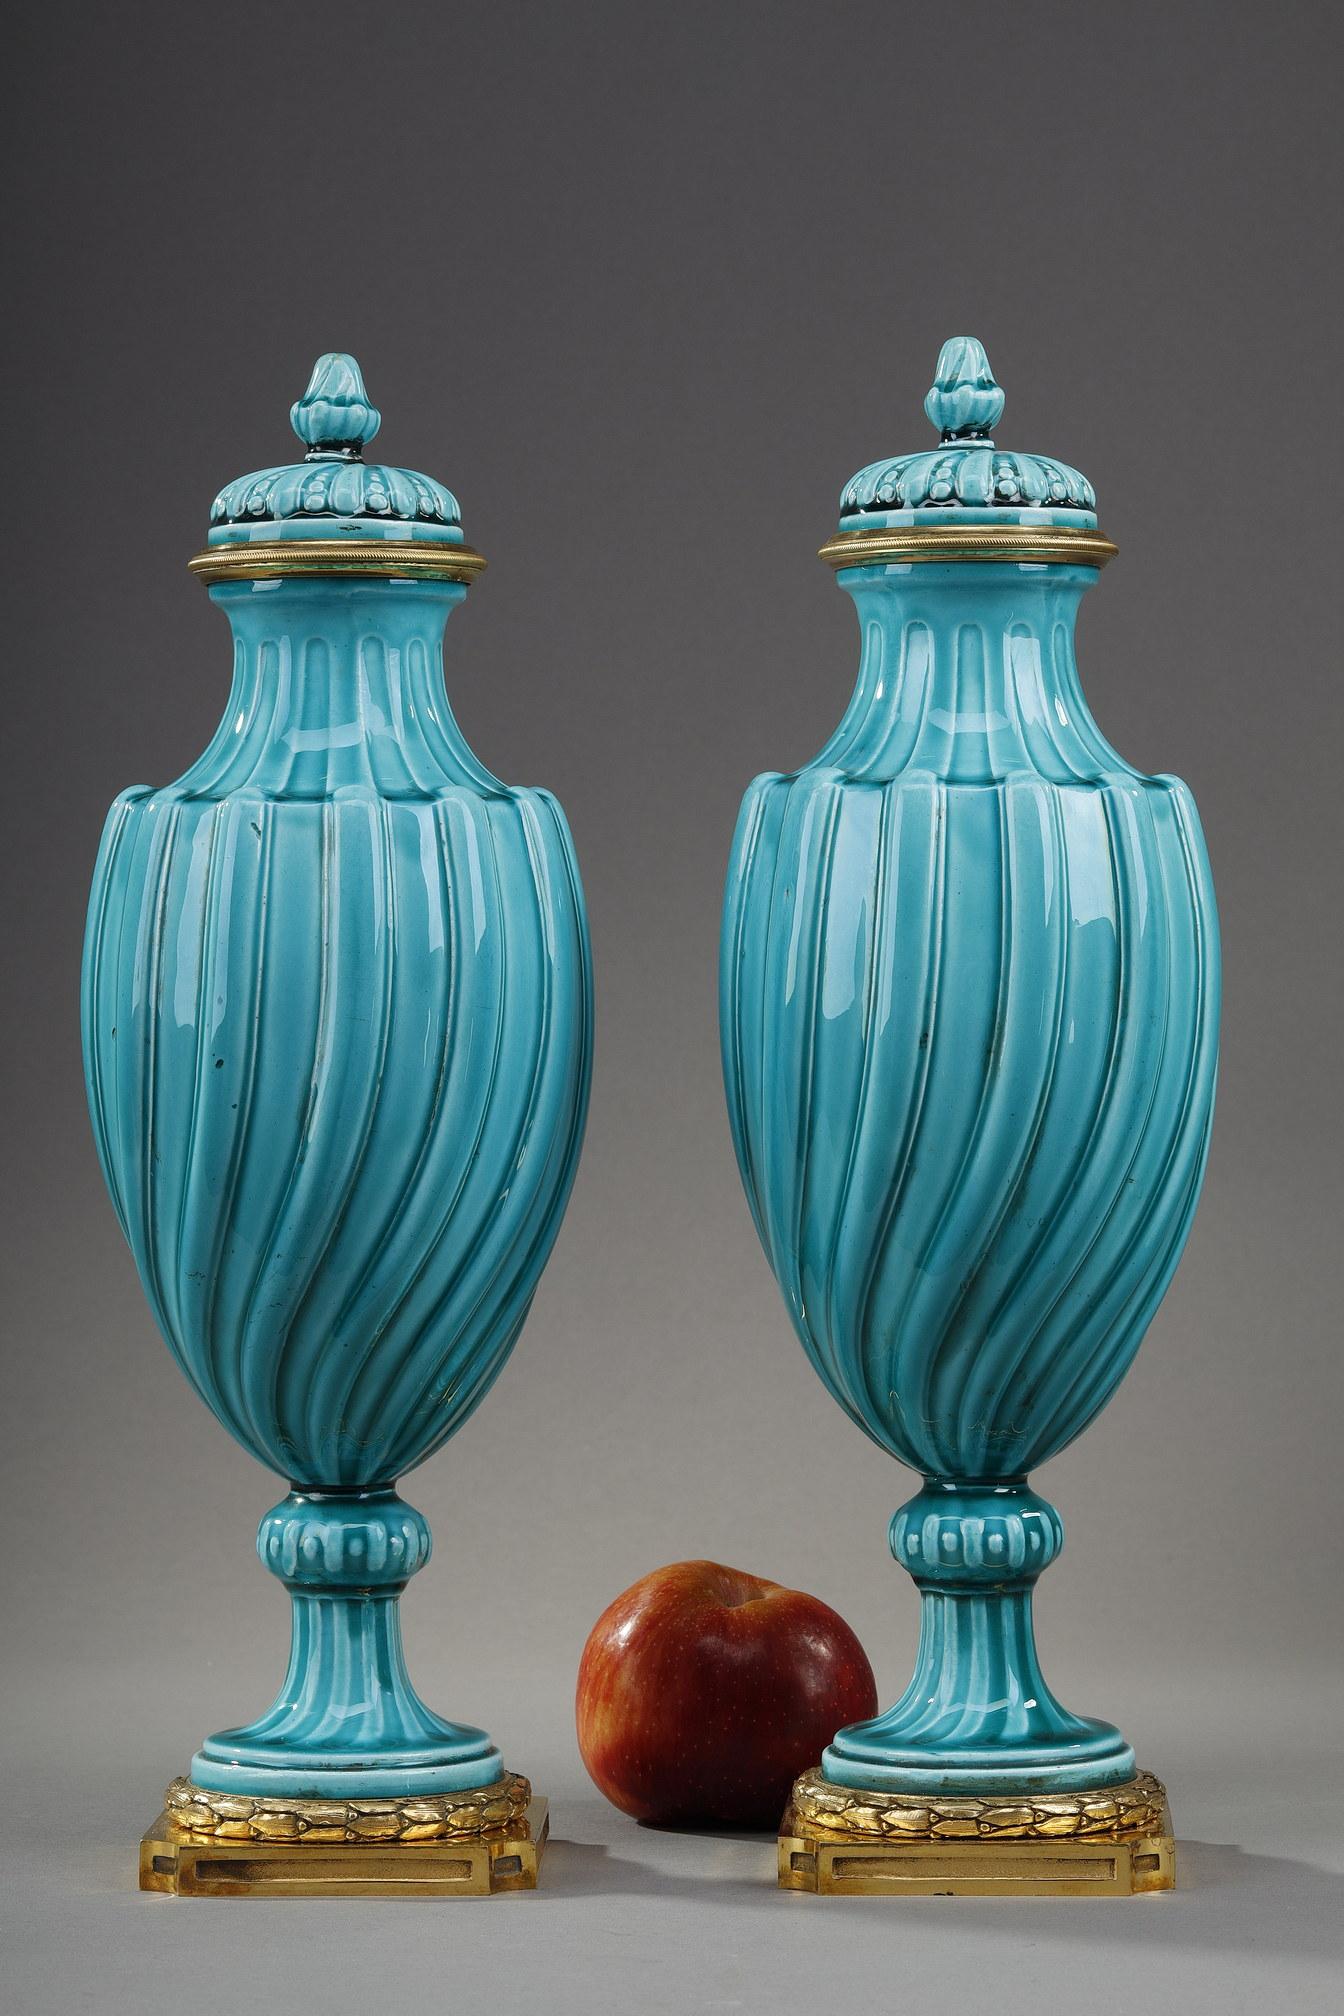 Türkisblaue Vasen aus Keramik im Louis-XVI-Stil mit gedrehtem Dekor, Paar. Sie haben eine vergoldete Bronzefassung. Er hat die Form eines Lorbeerkranzes am Fuß. Der abnehmbare Deckel ist gedreht und wird von einem Griff gekrönt. 

Es handelt sich